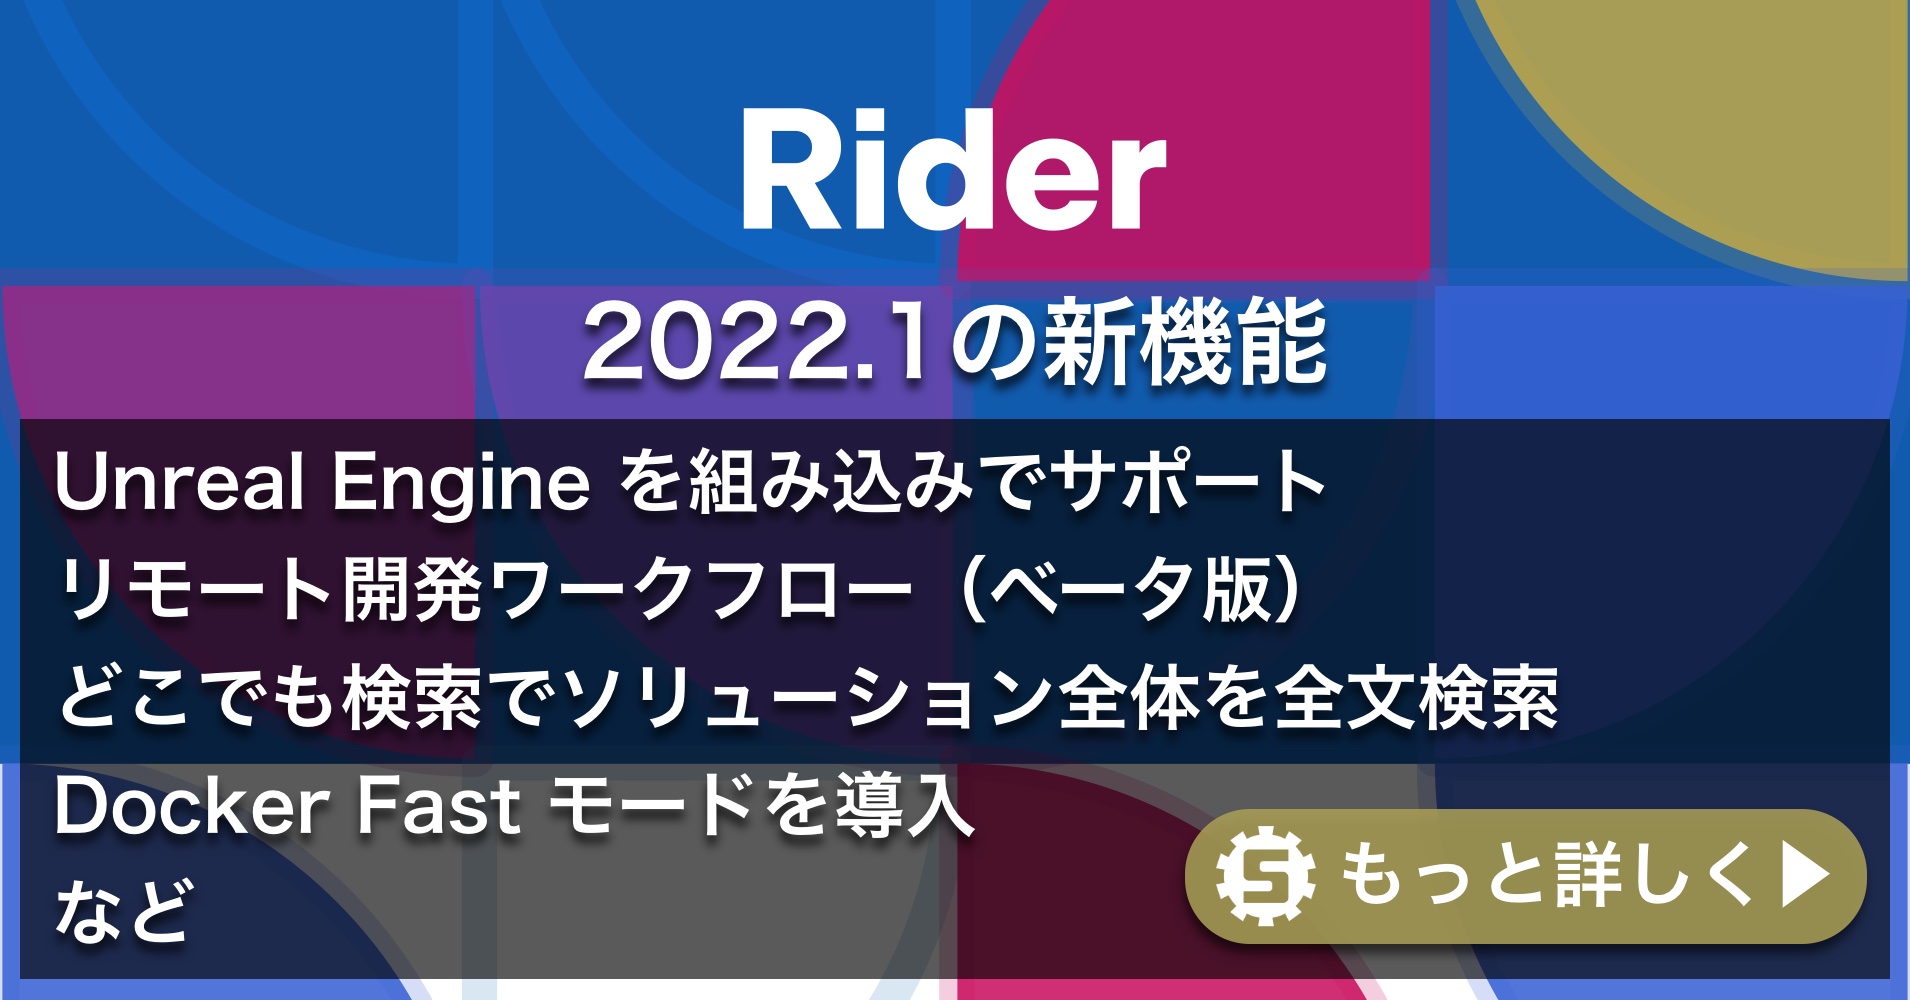 Rider 2022.1の新機能